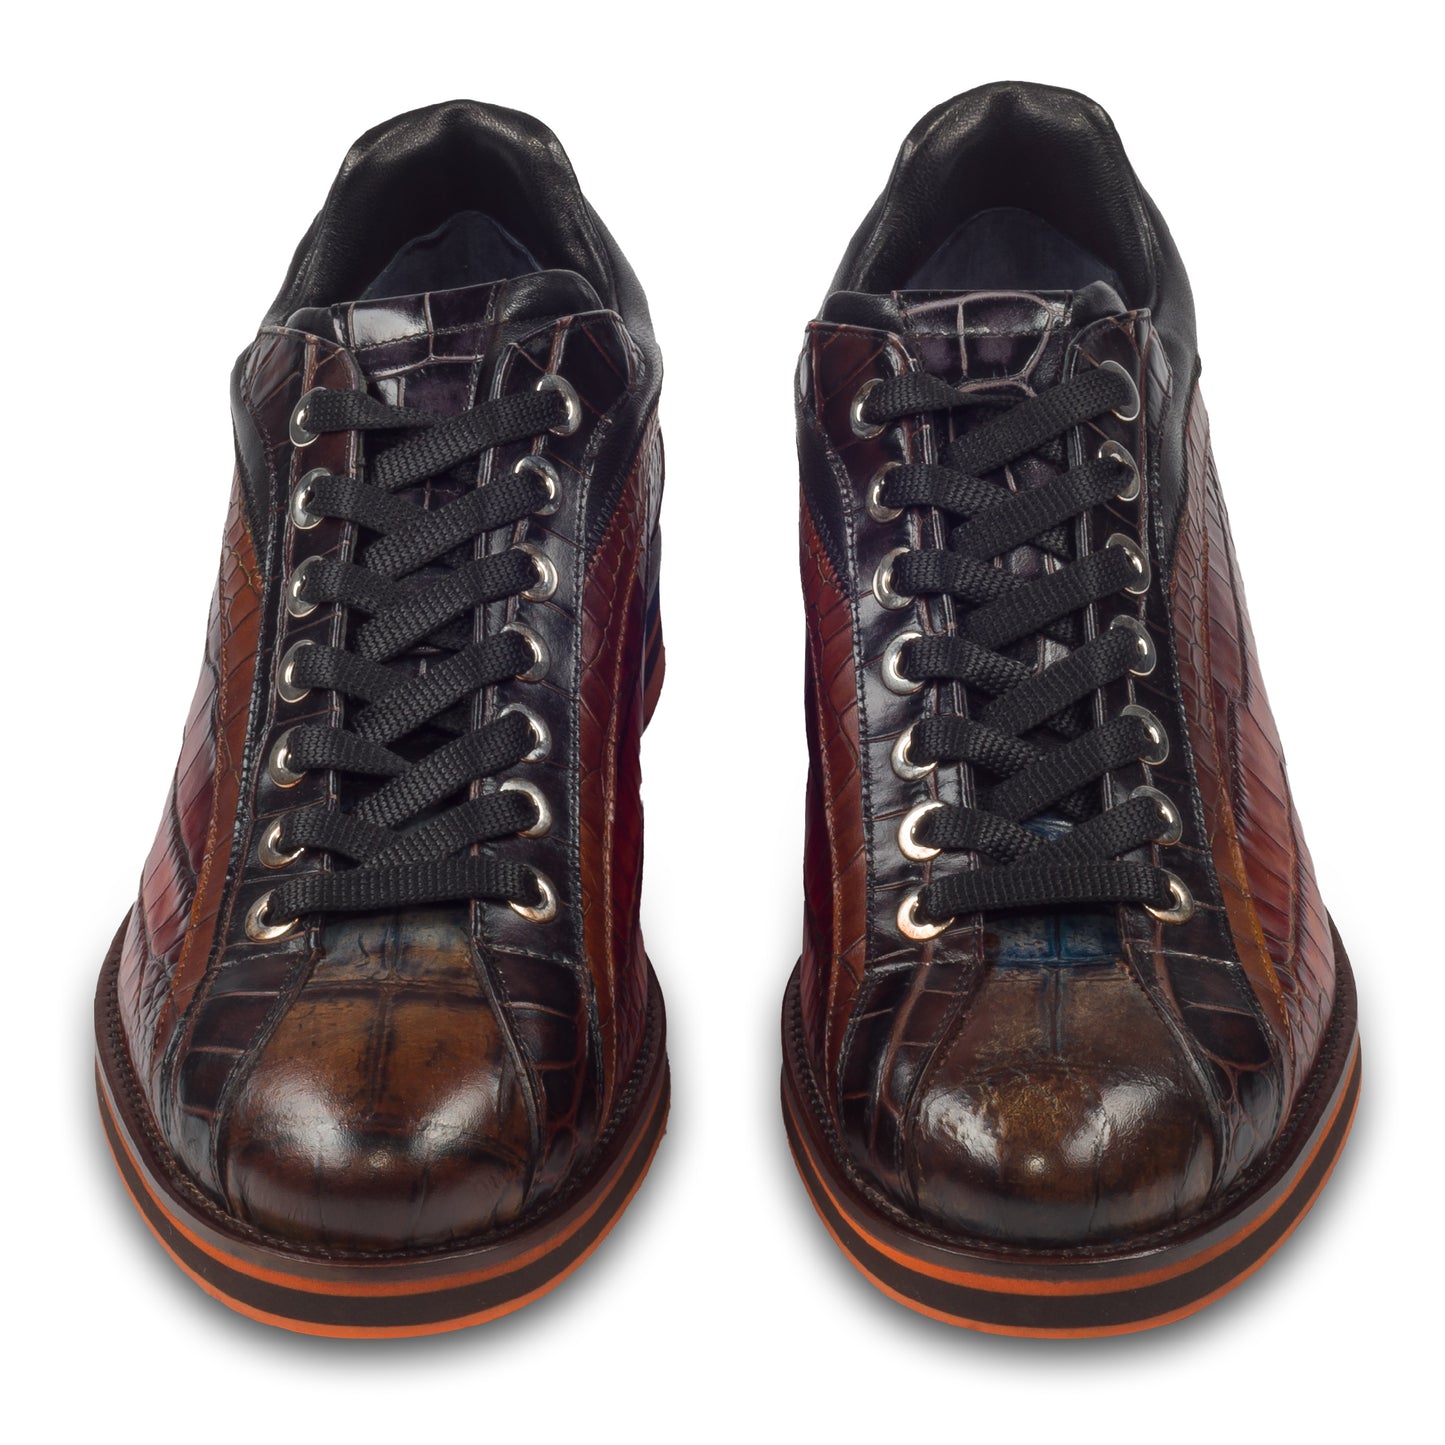 Lorenzi Herren Leder Sneaker, braun/schwarz mit Reptilprägung, durchgenäht - Außenseite rechter Schuh. Bei SISENTO